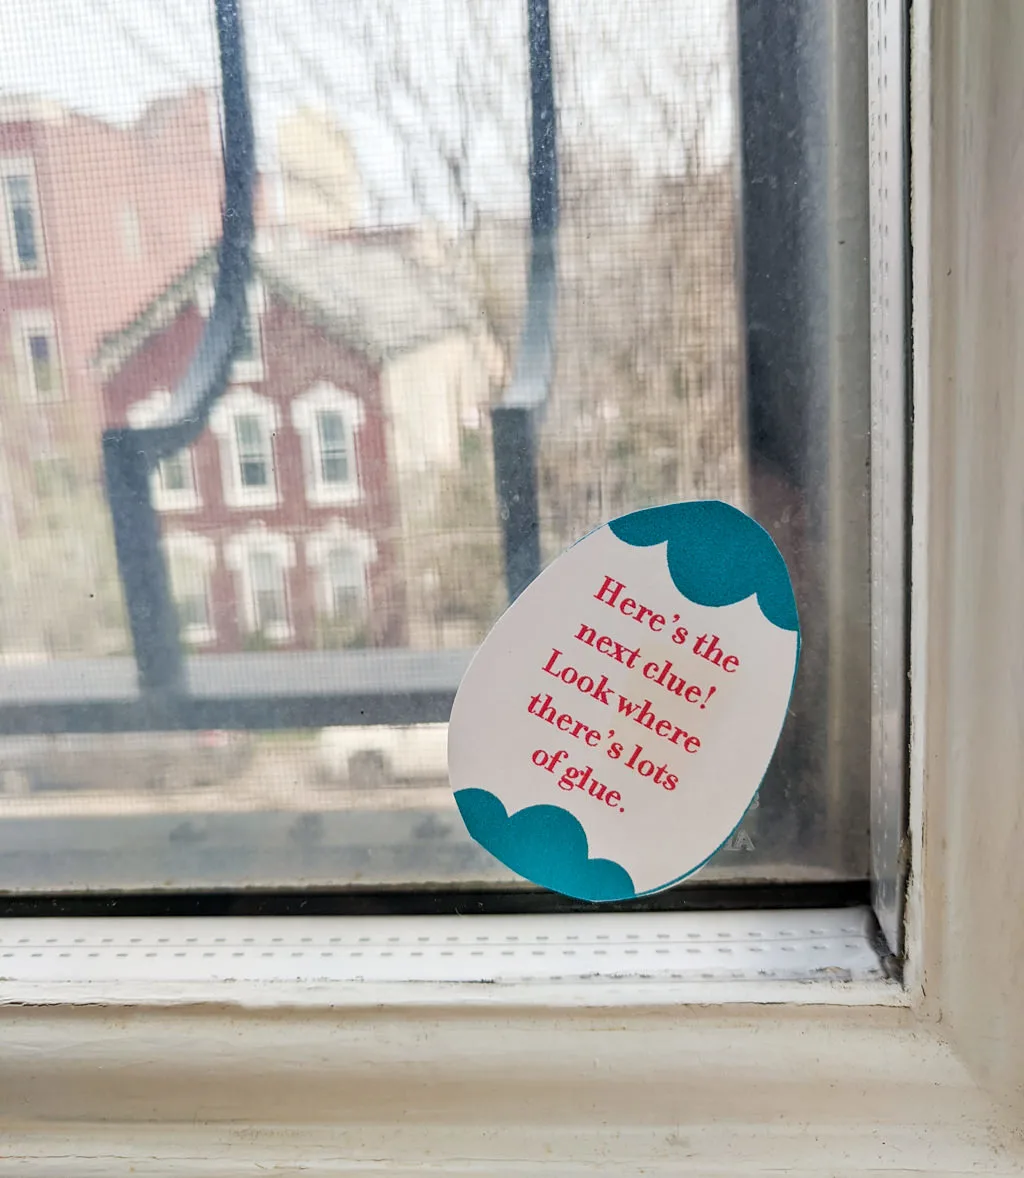 Easter indoor scavenger hunt clue hidden on a window